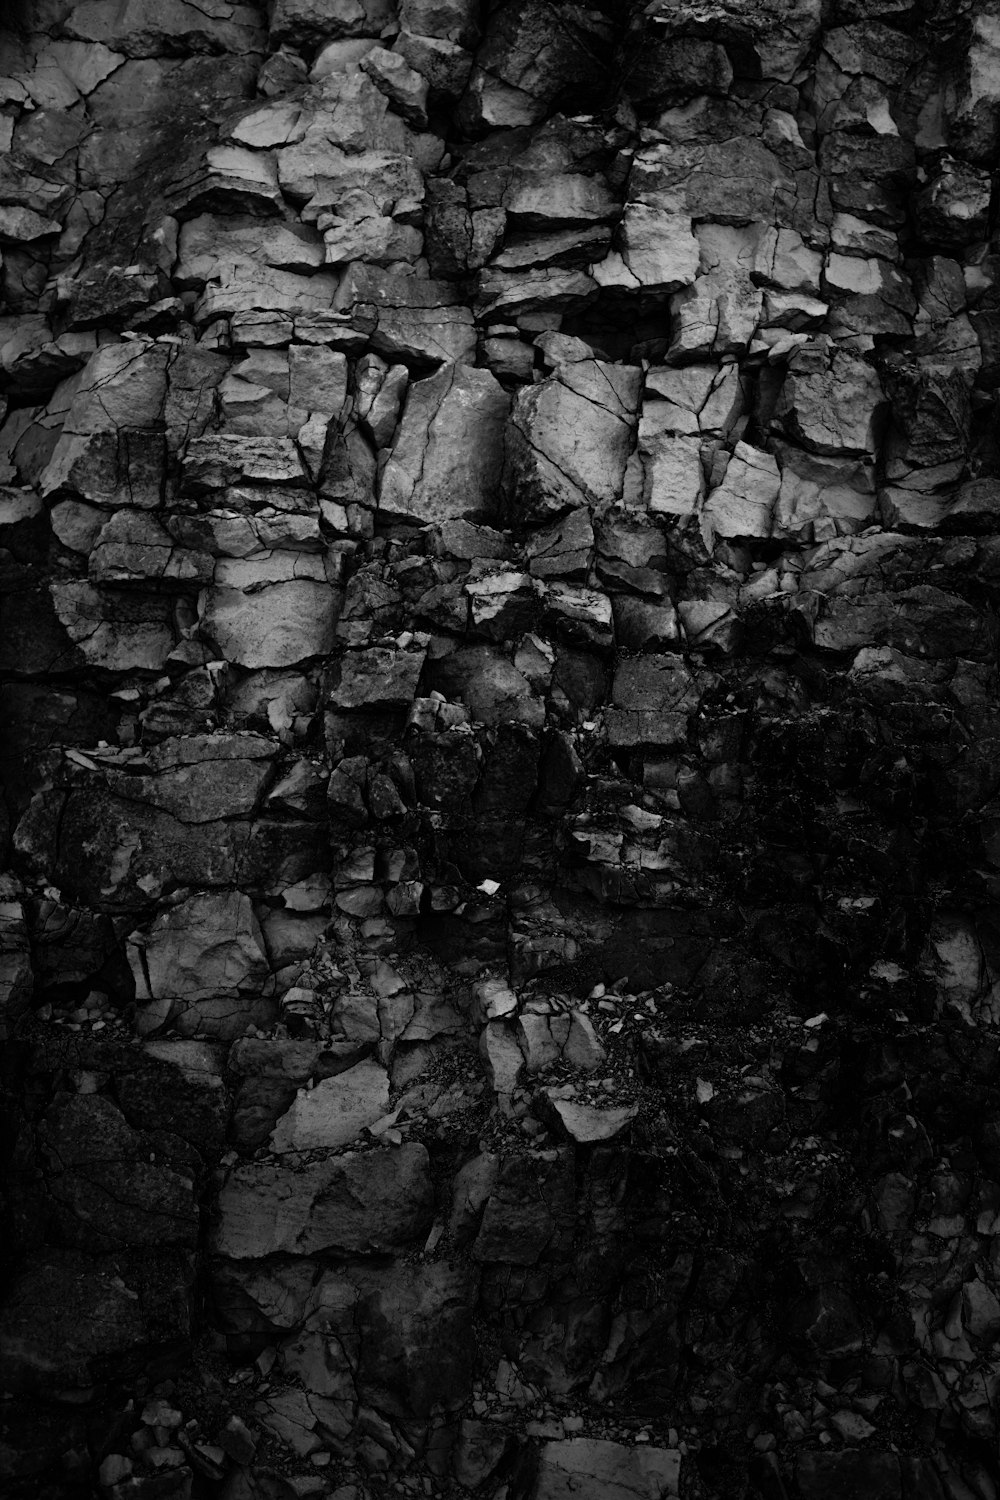 Photographie en niveaux de gris de roches